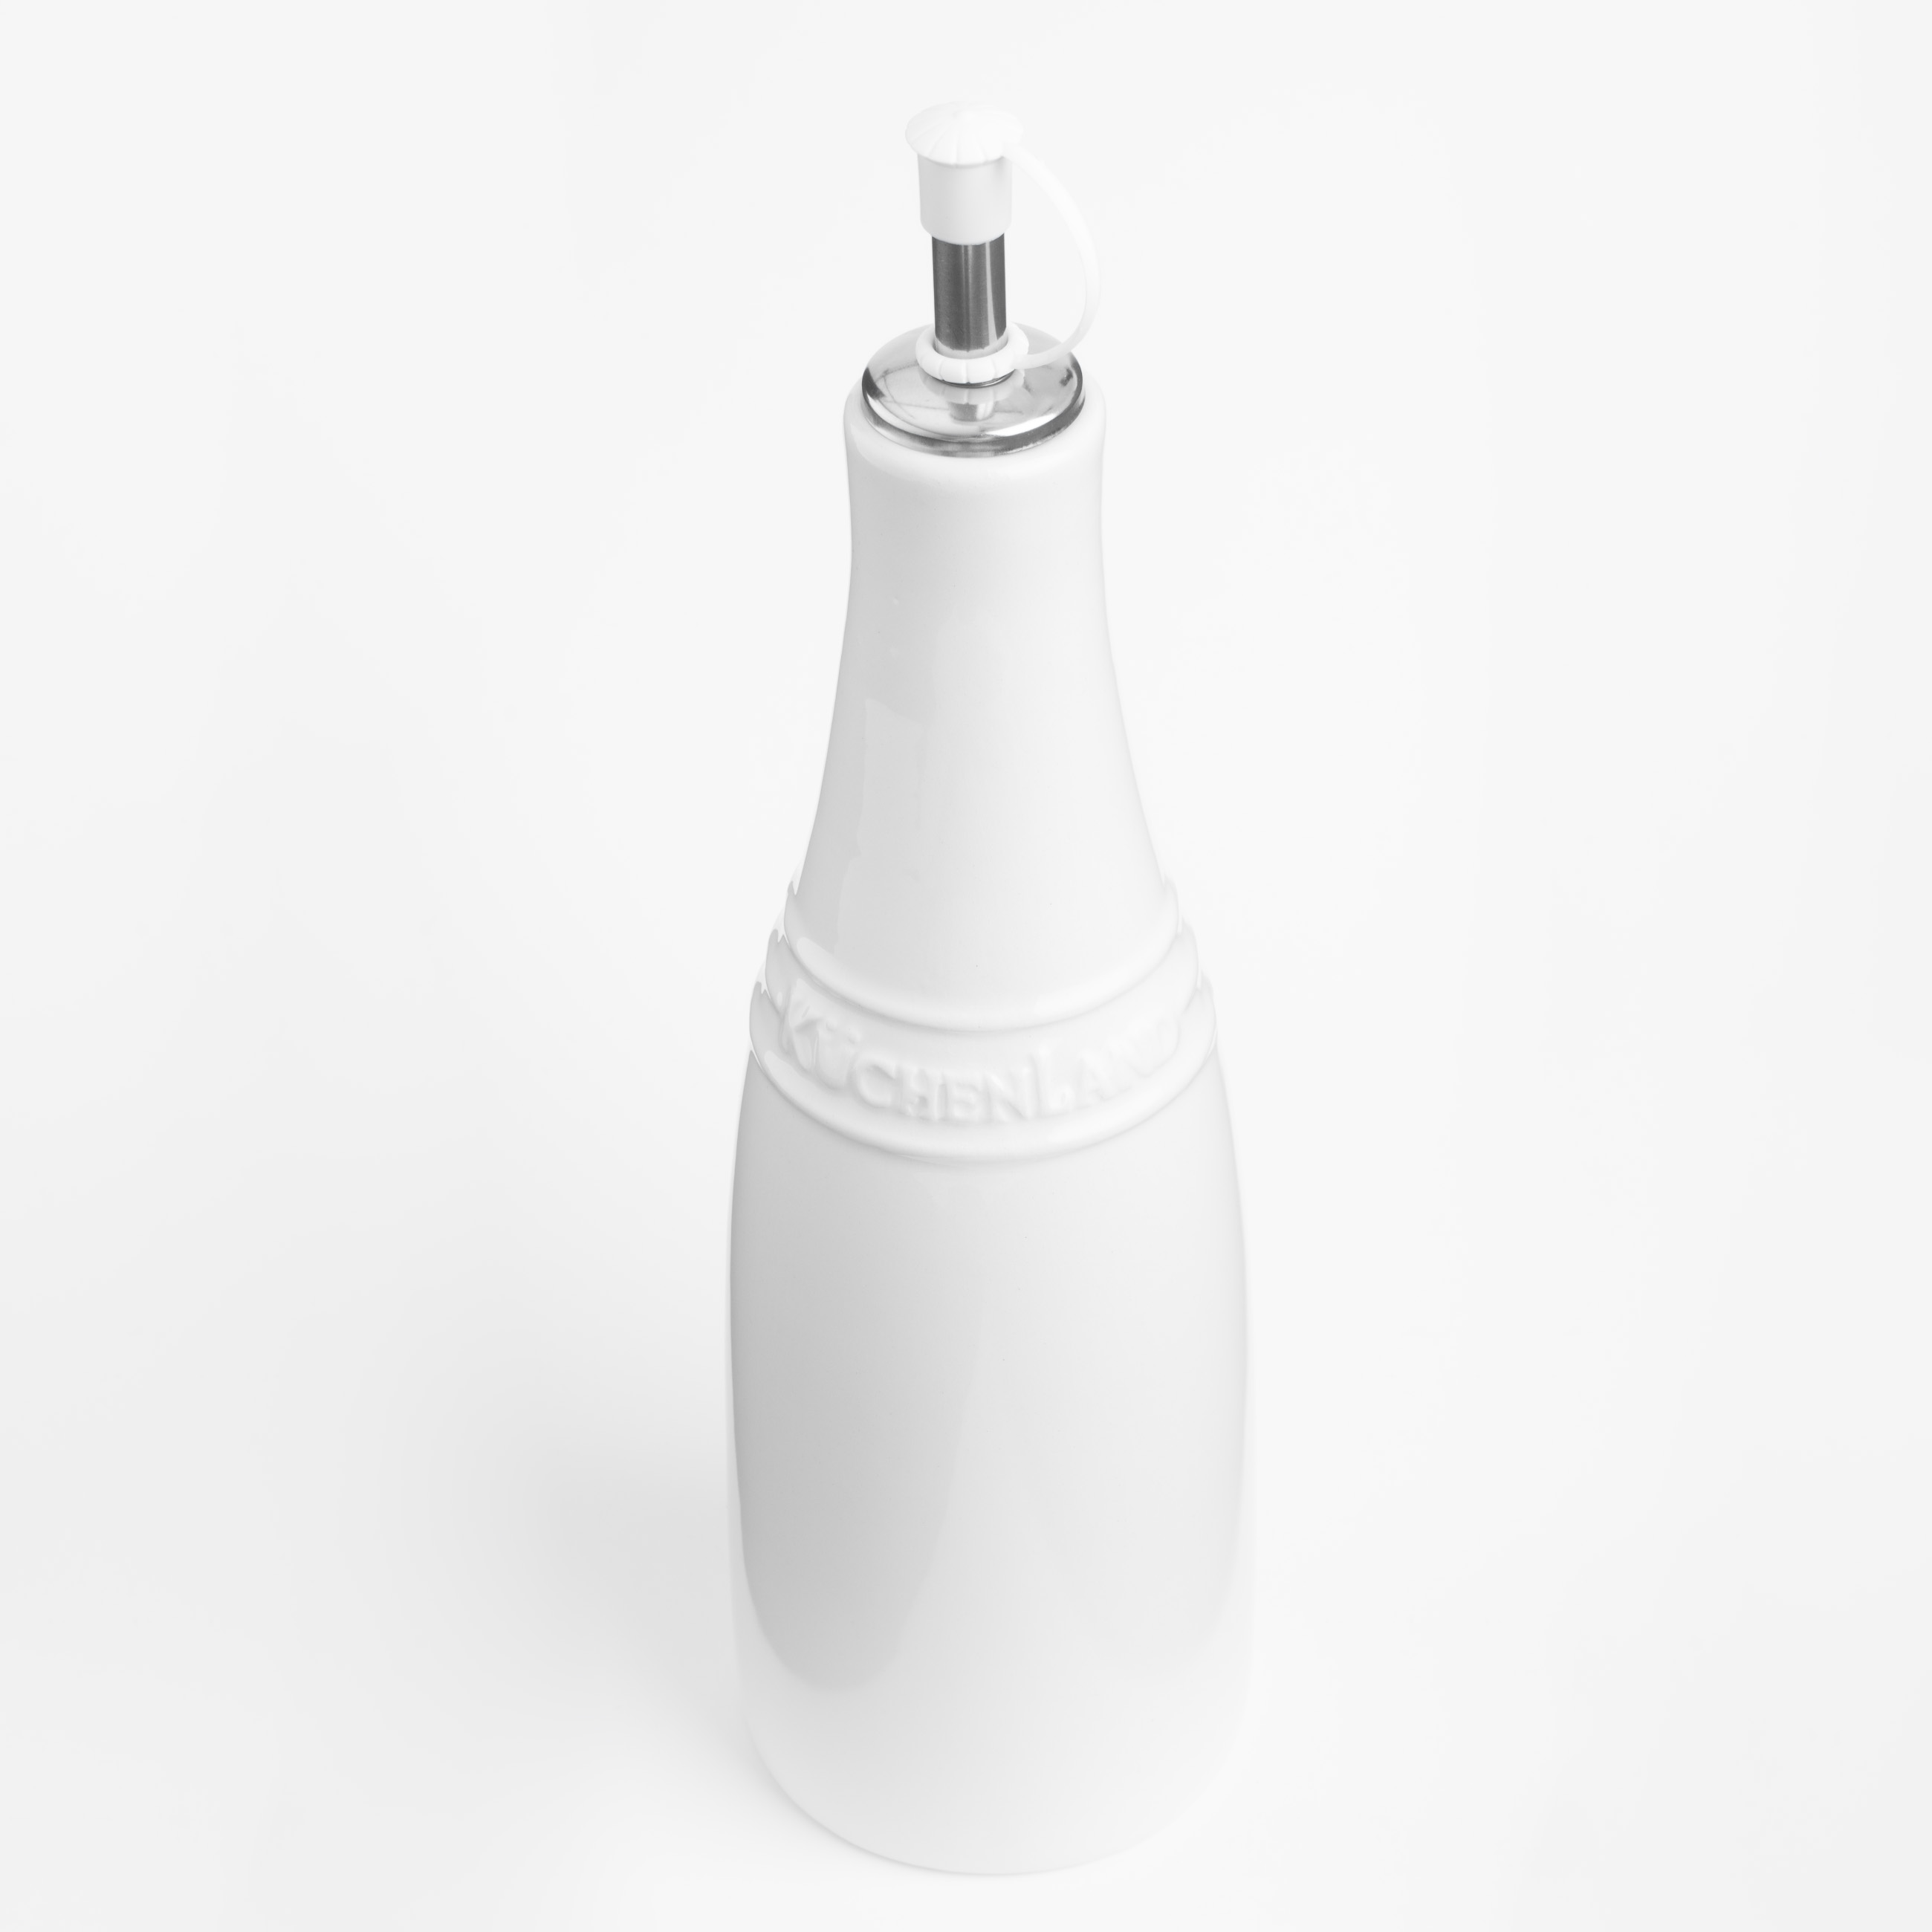 Бутылка для масла или уксуса, 450 мл, с дозатором, керамика/сталь, белая, Ceramo